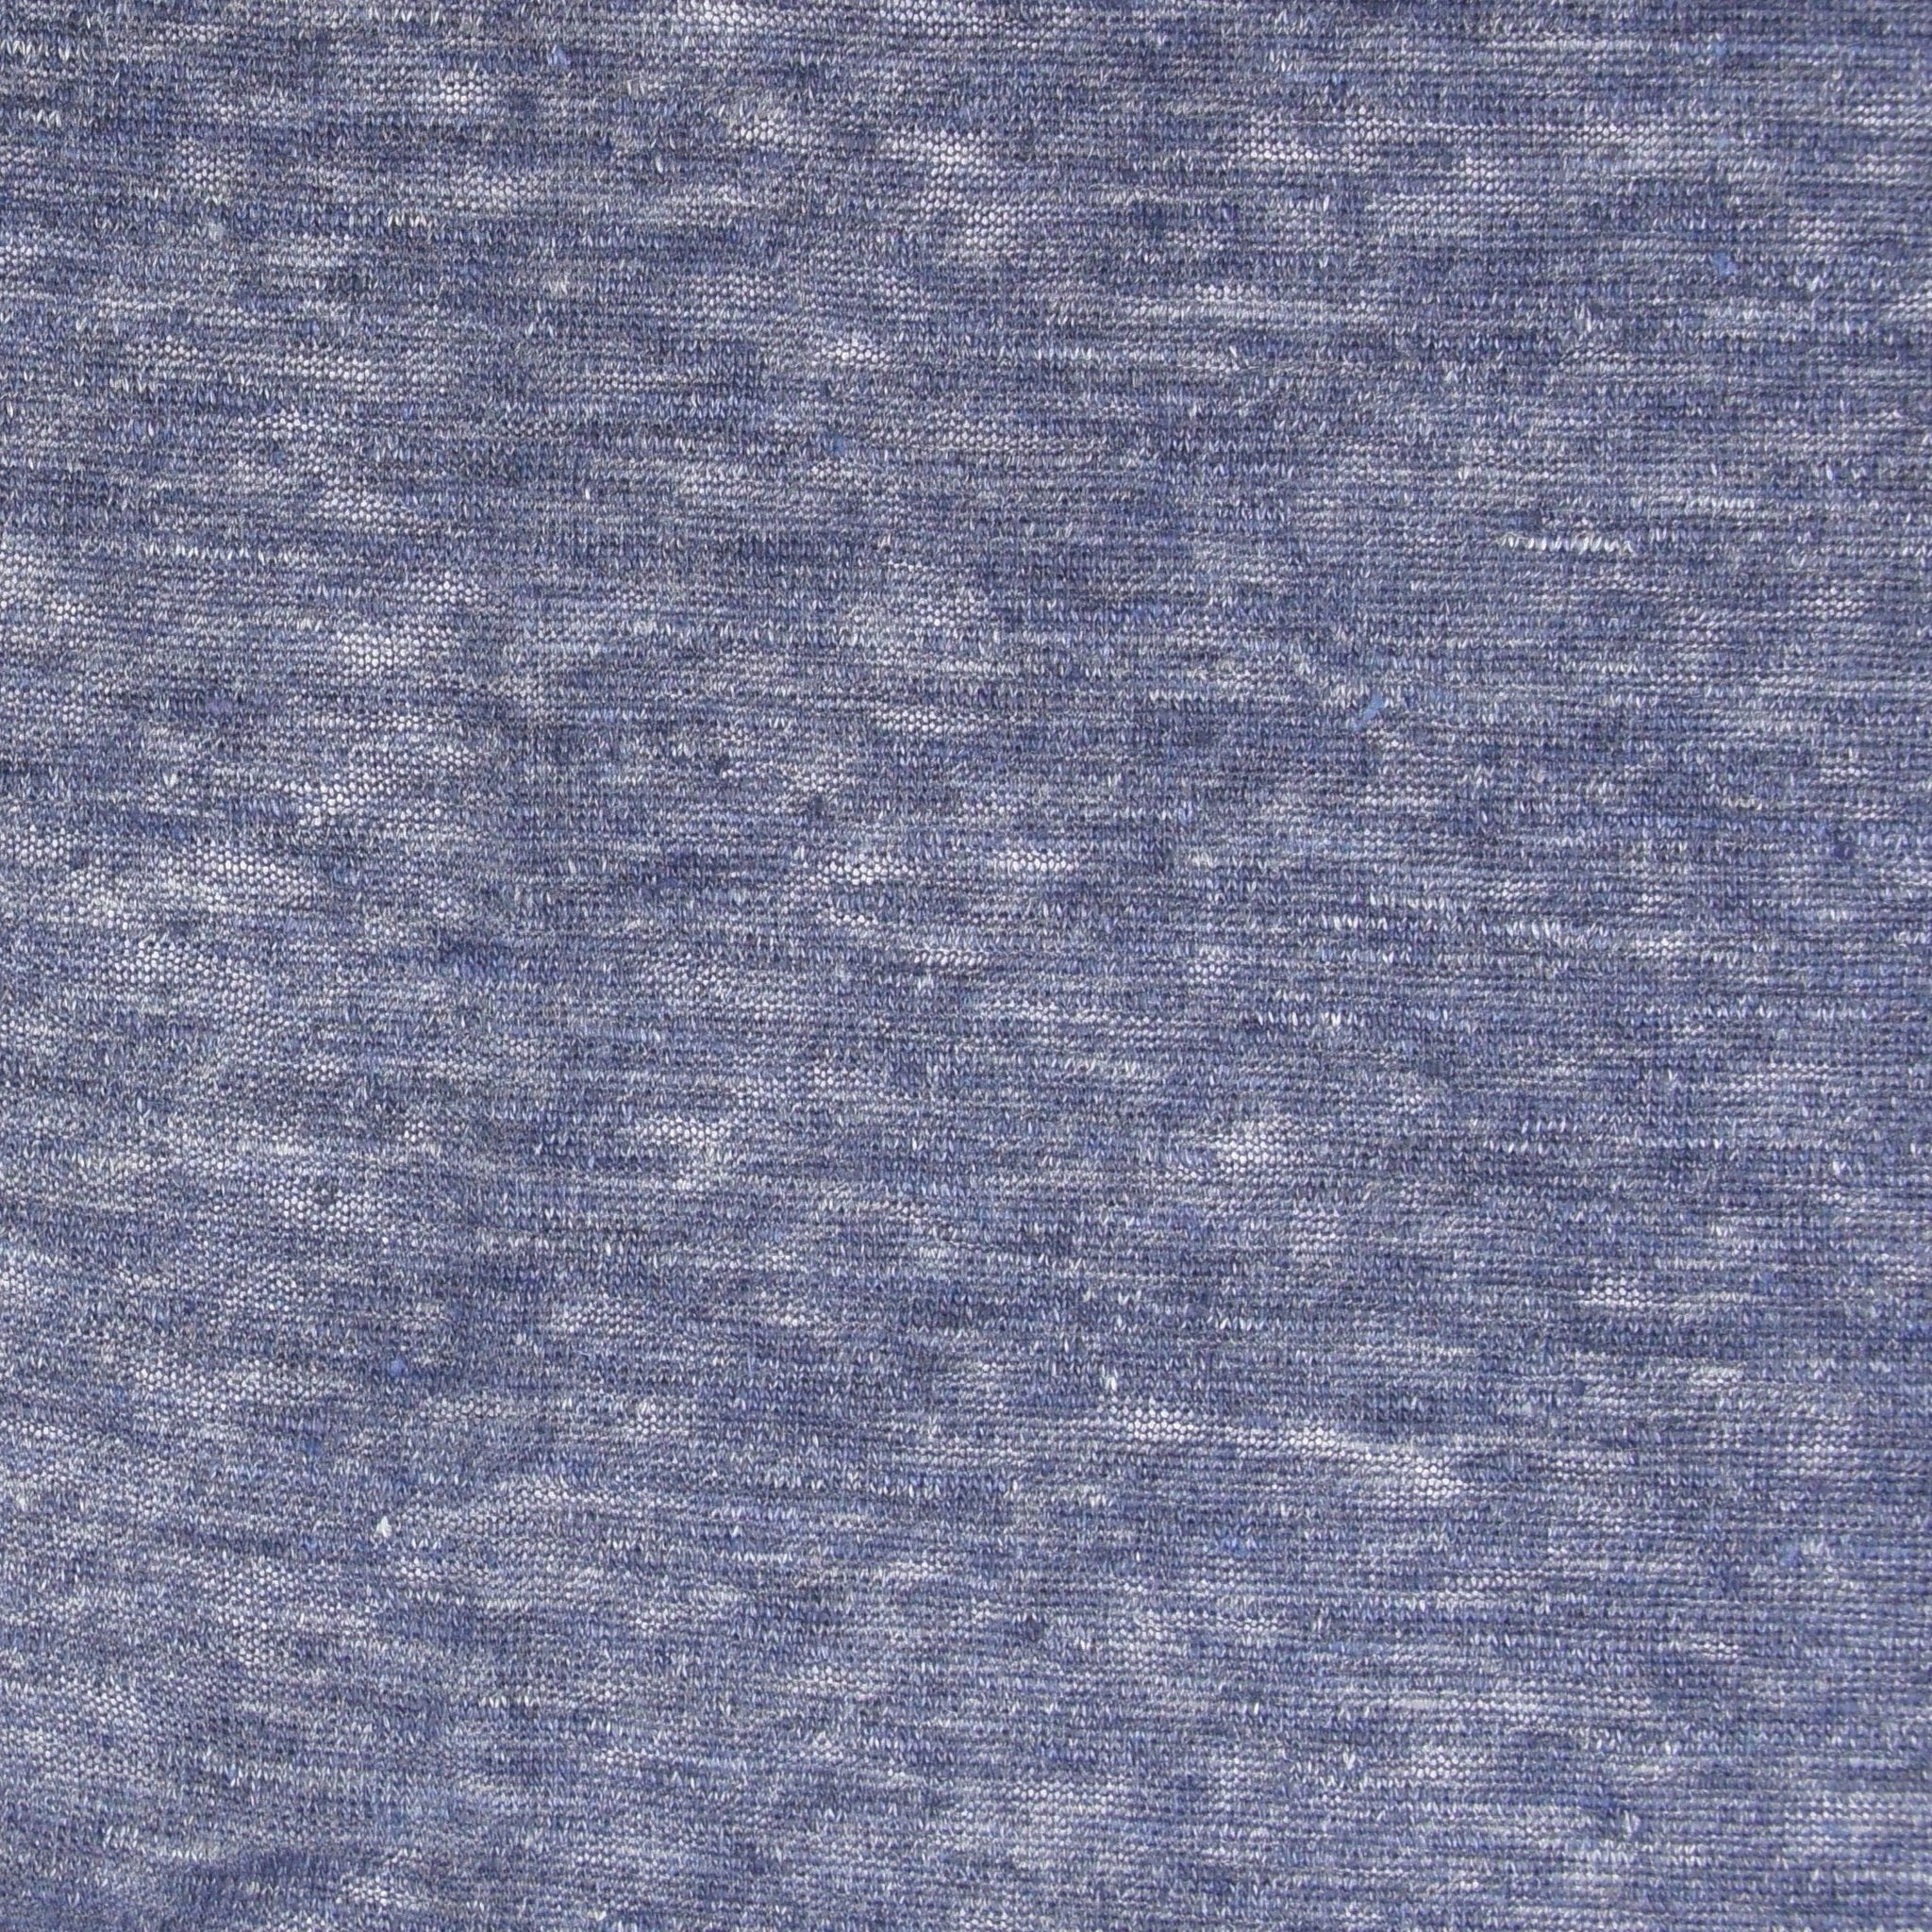 Japanese Linen Jersey - Heather Blue